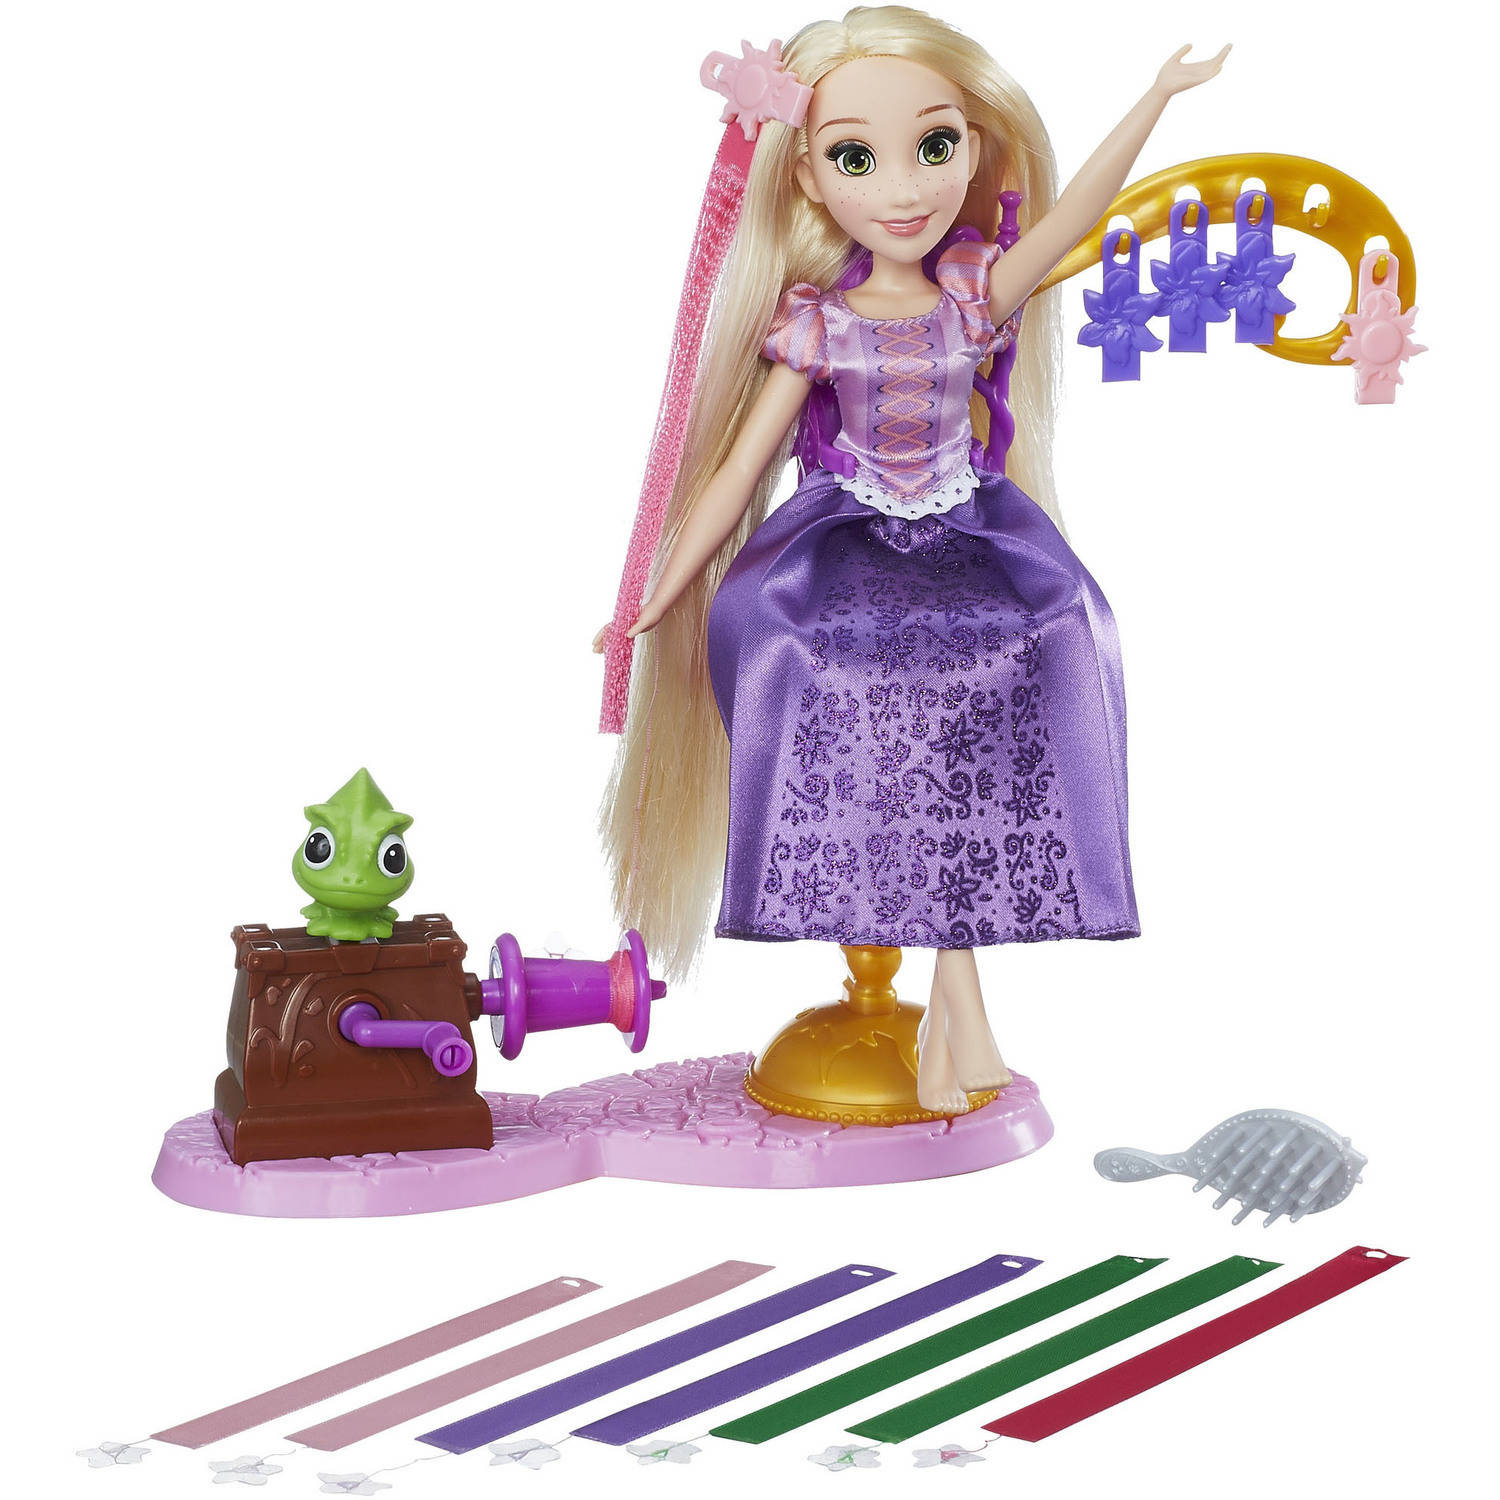 Disney Princess Rapunzel's Royal Ribbon Salon - image 1 of 10